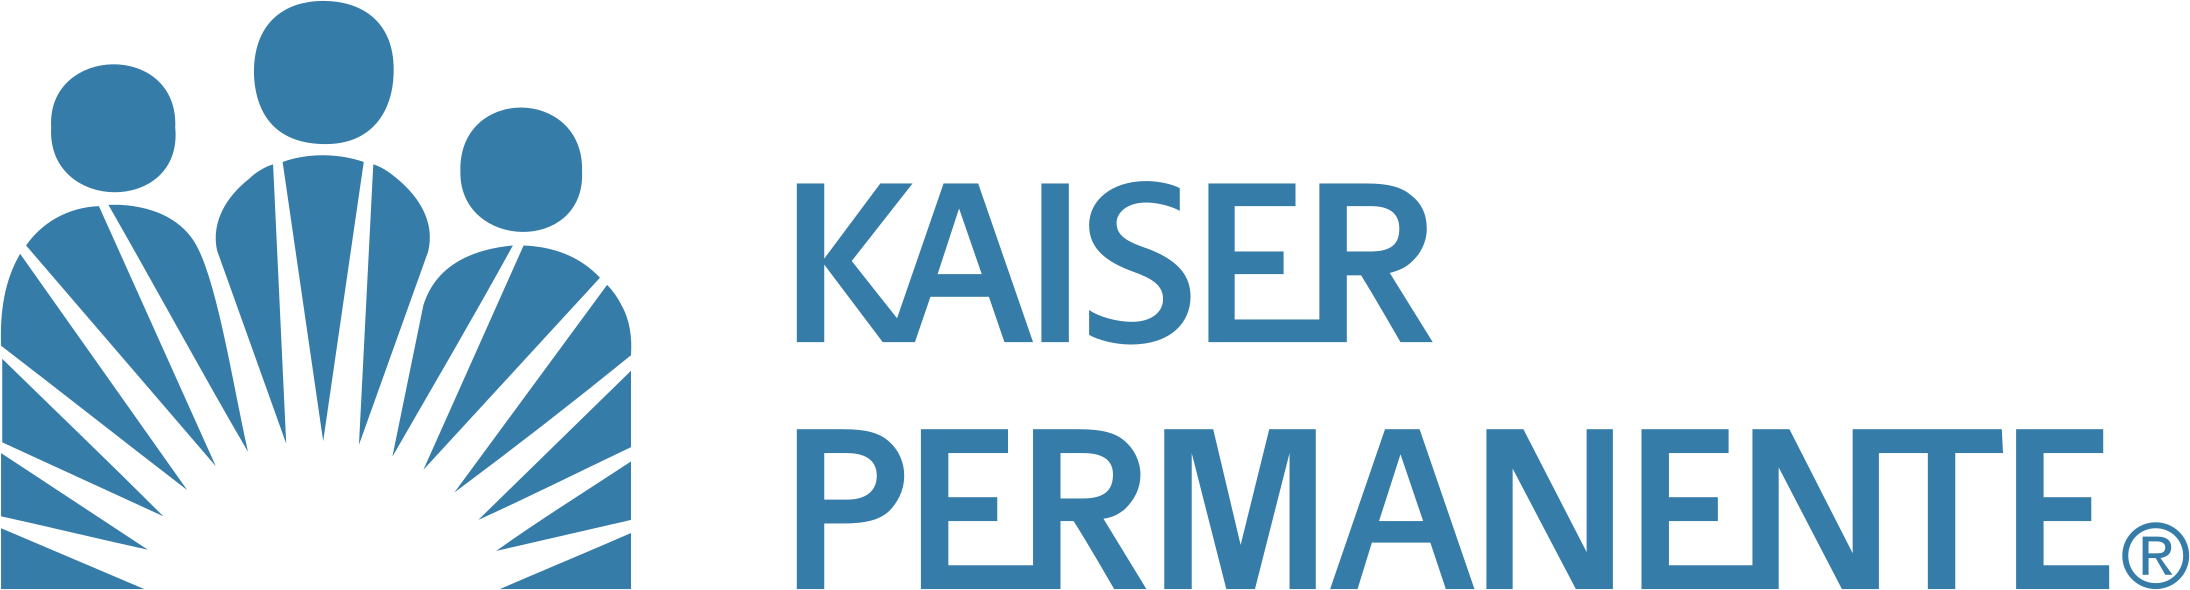  kaiser-permanente-logo-png-transparent